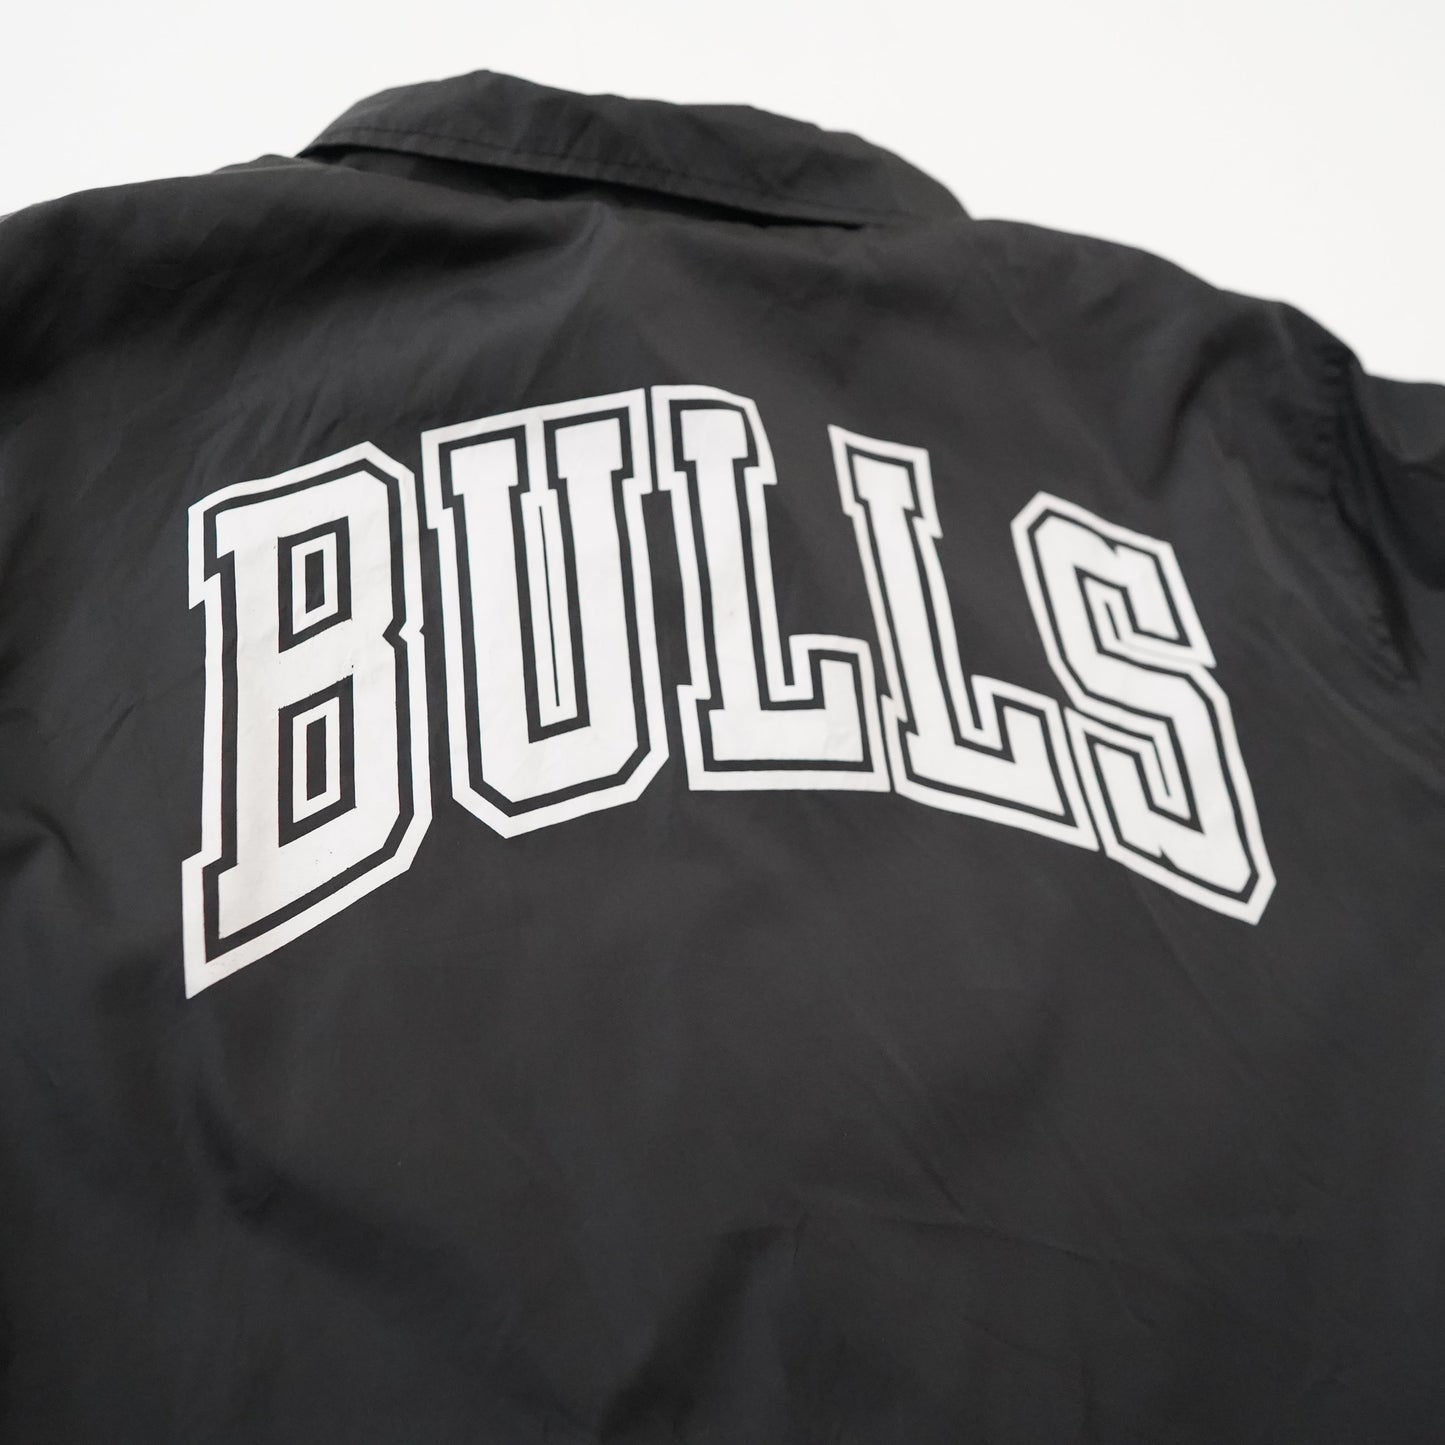 NBA BULLS coach jacket